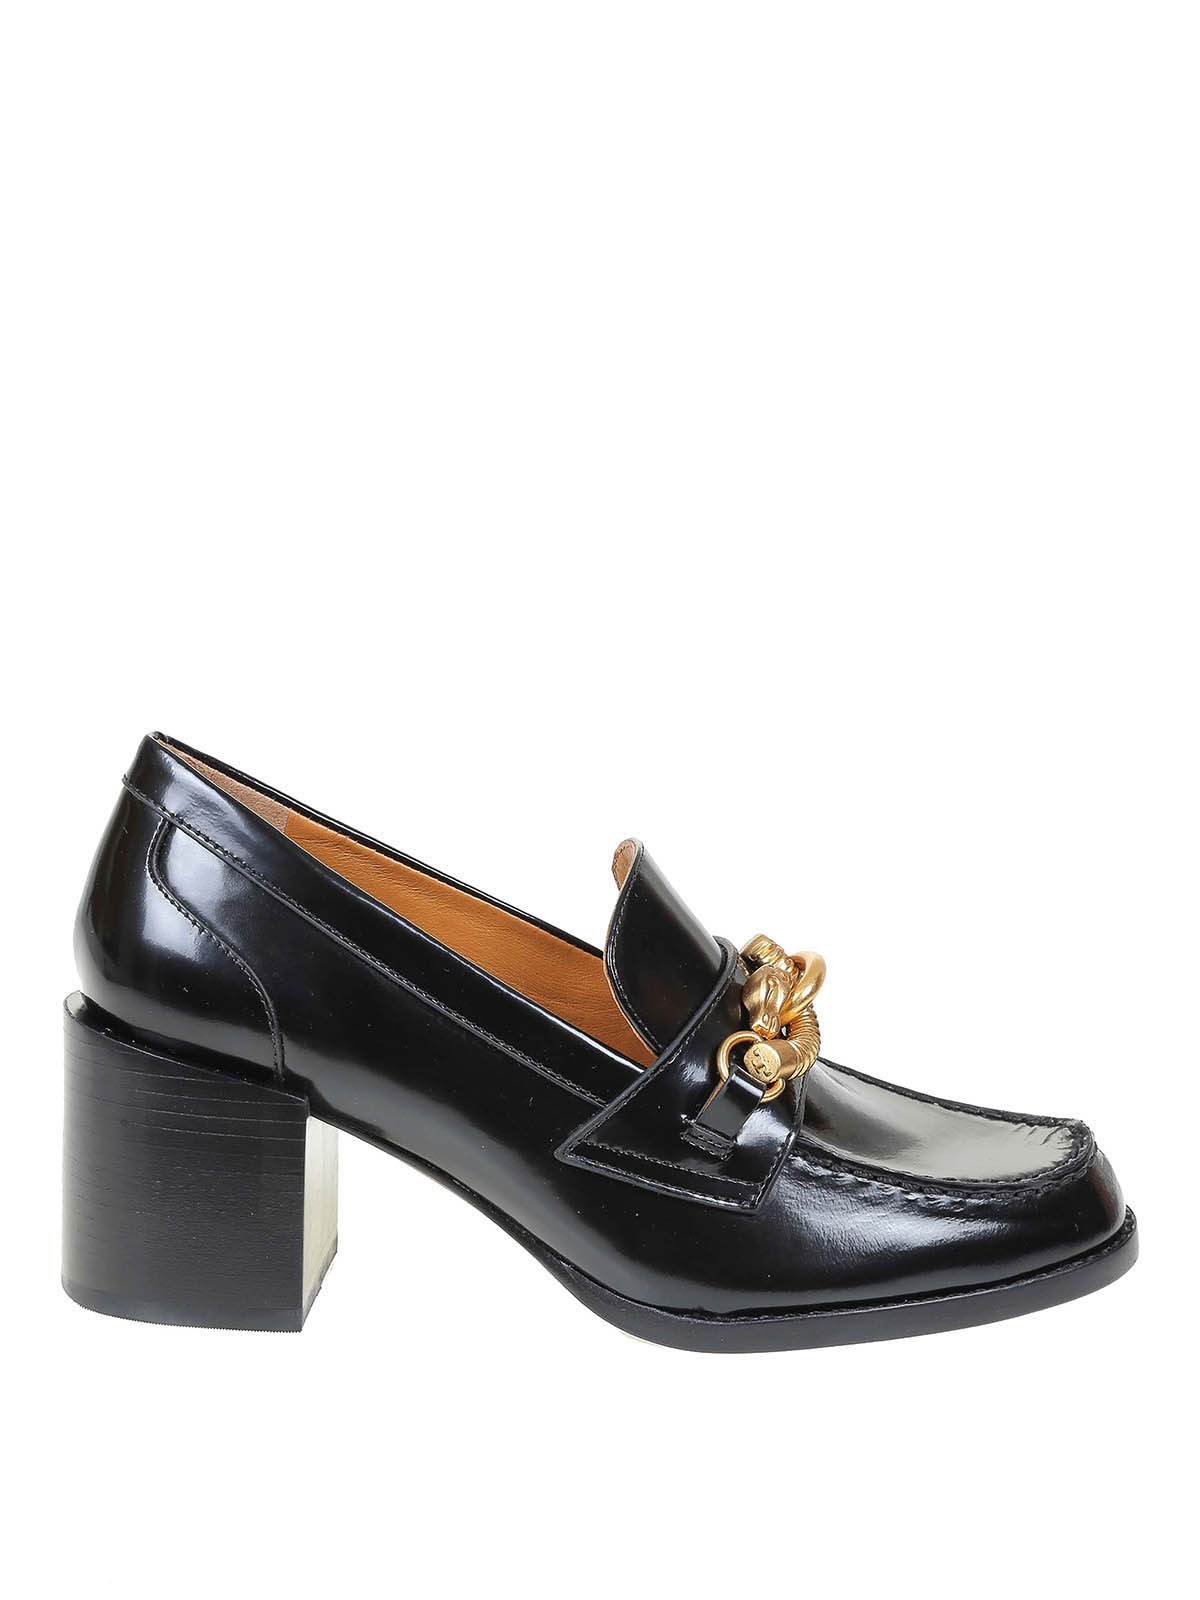 Court shoes Tory Burch - Jessa pumps - 85503006 | Shop online at iKRIX